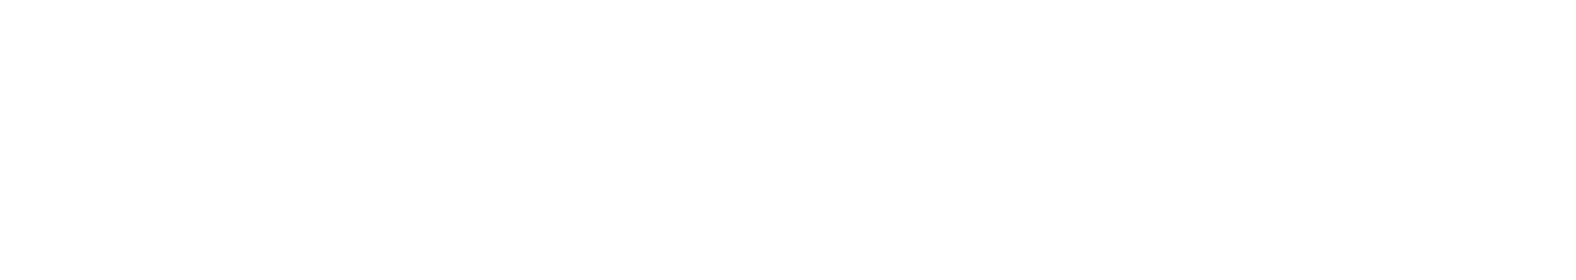 Bio-Techne Logo groß für dunkle Hintergründe (transparentes PNG)